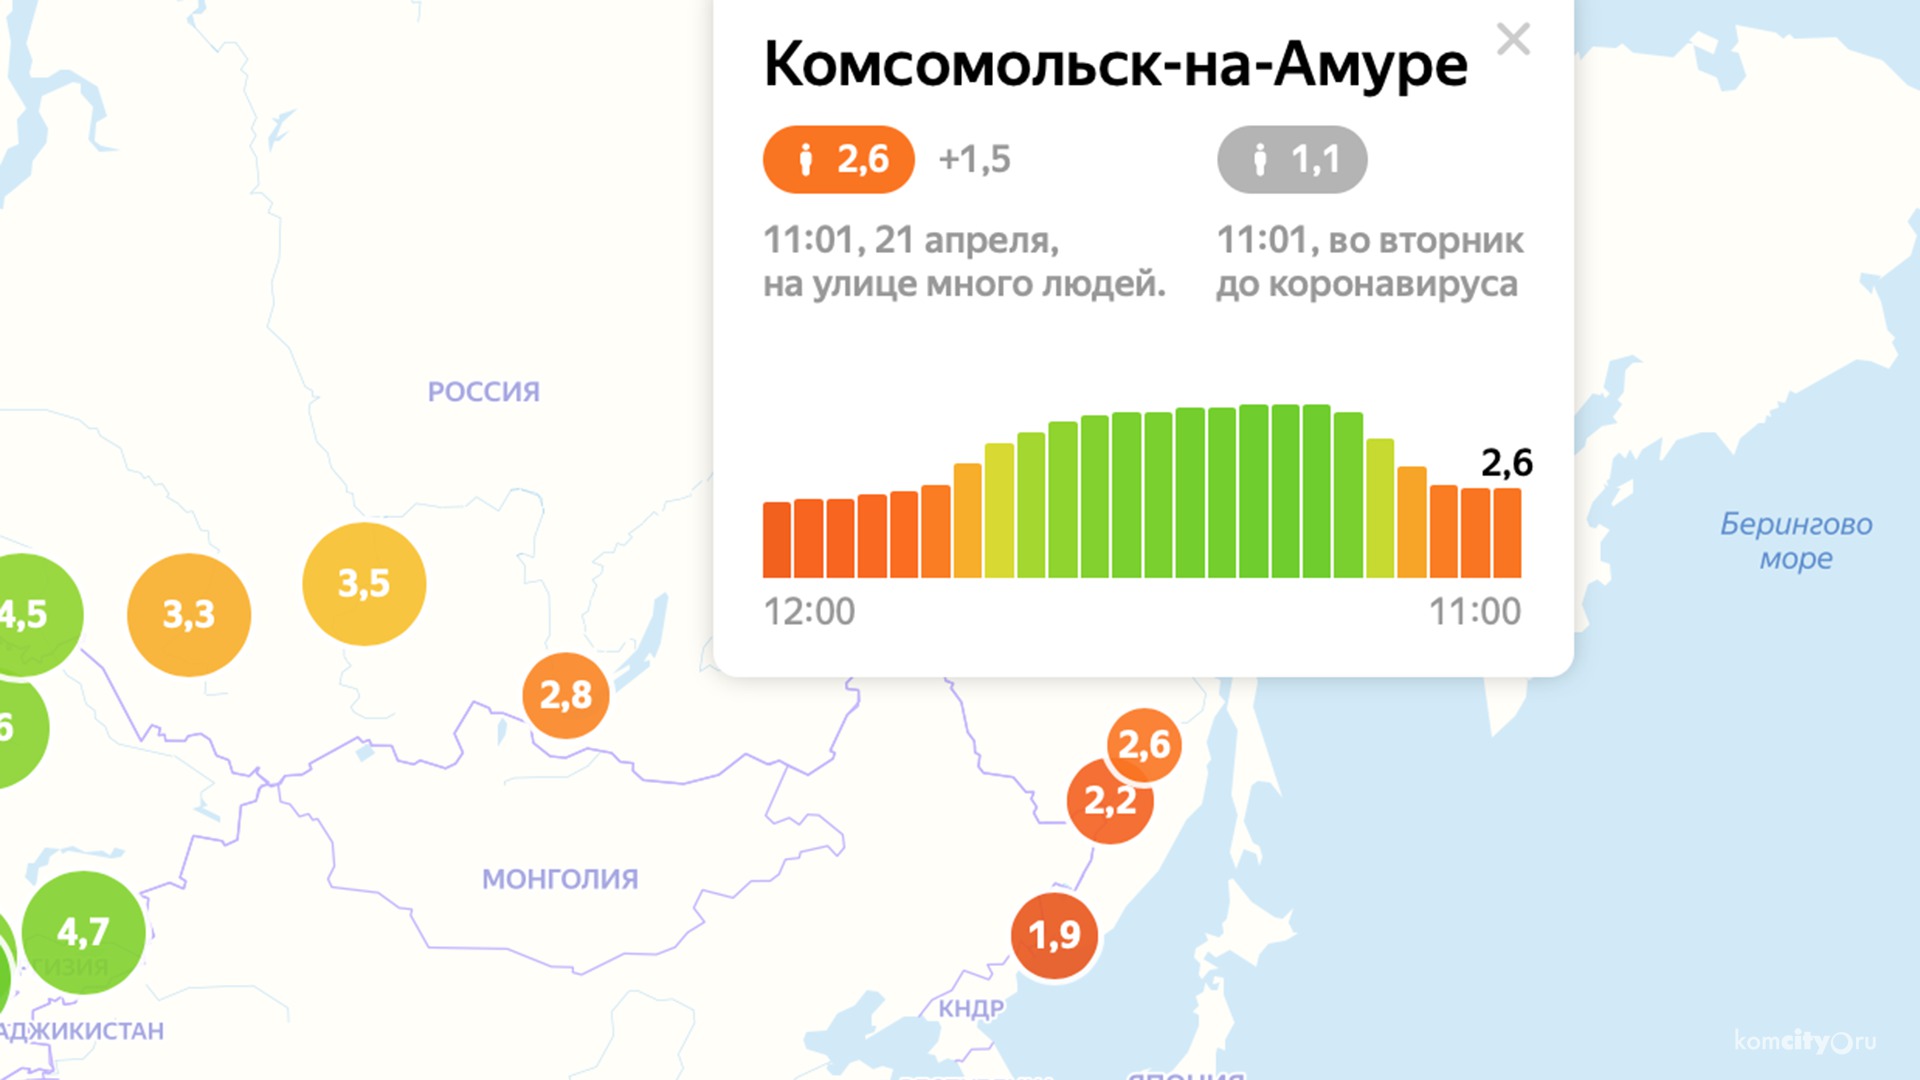 Несмотря на подтверждённый случай Covid-19, индекс самоизоляции в Комсомольске-на-Амуре остаётся низким